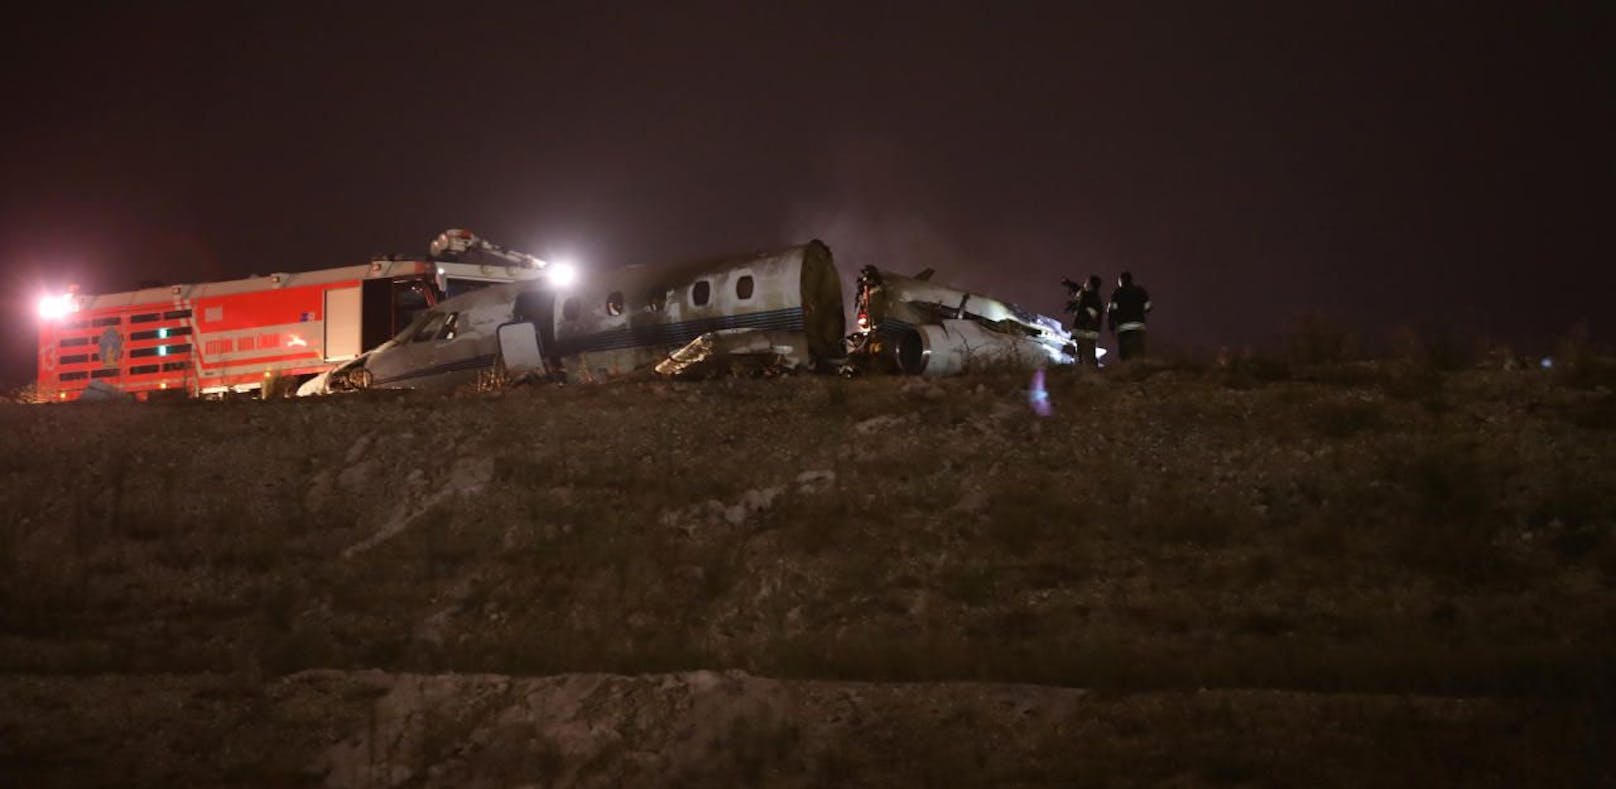 Flughafen von Istanbul muss schließen: Bild des verunglückten Flugzeugs. (21. September 2017)